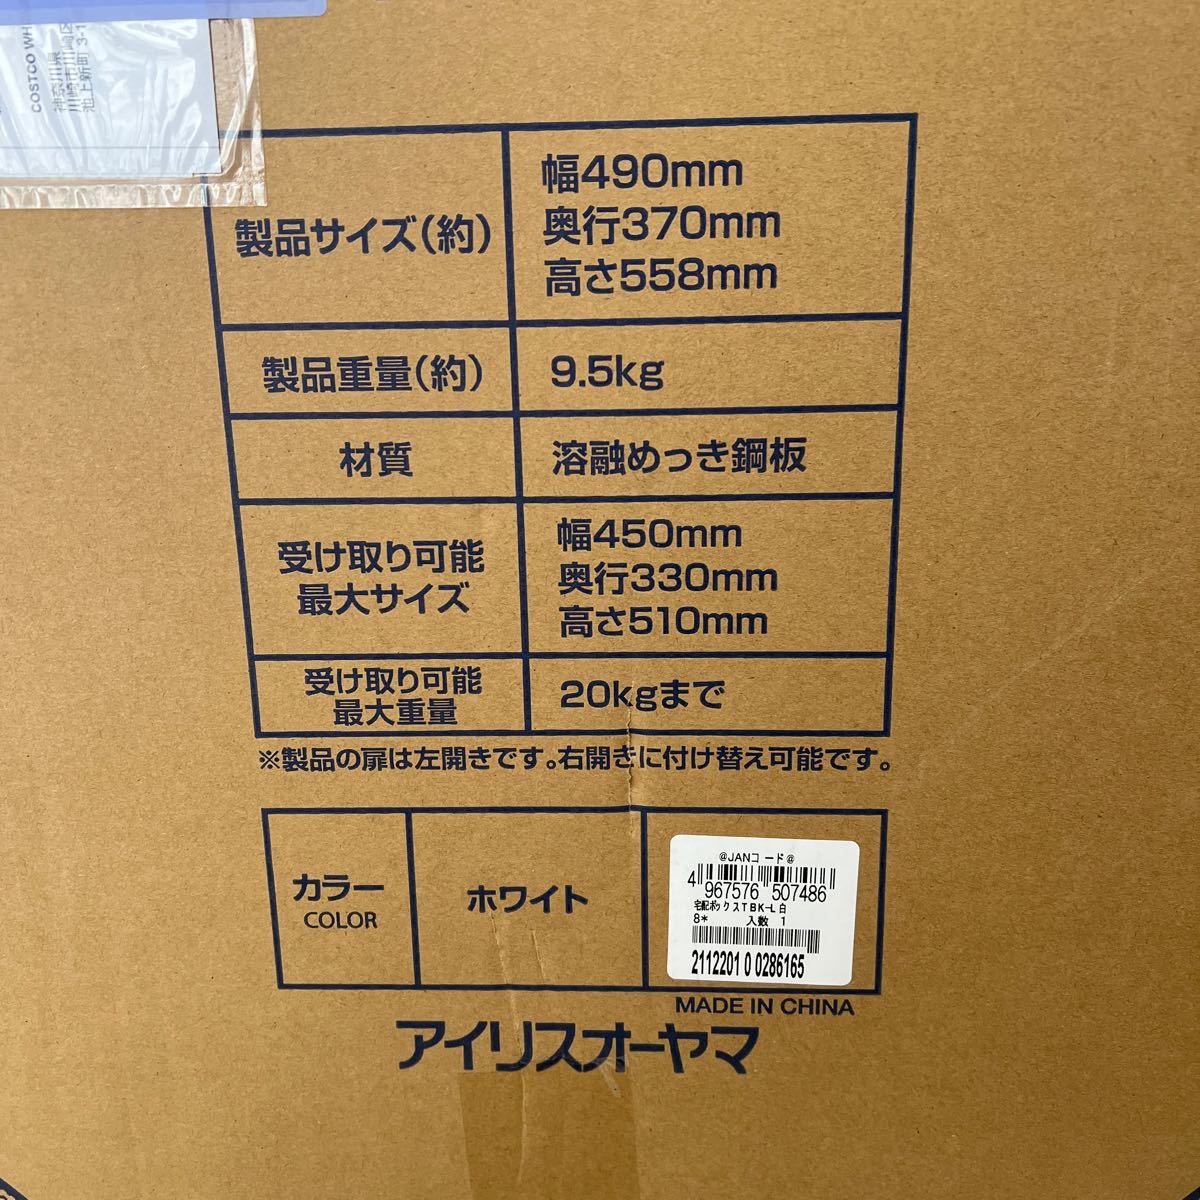 アイリスオーヤマ 宅配ボックス Lサイズ TBK-L ホワイト 97L 鍵付き 49cm×37cm×55.8cm